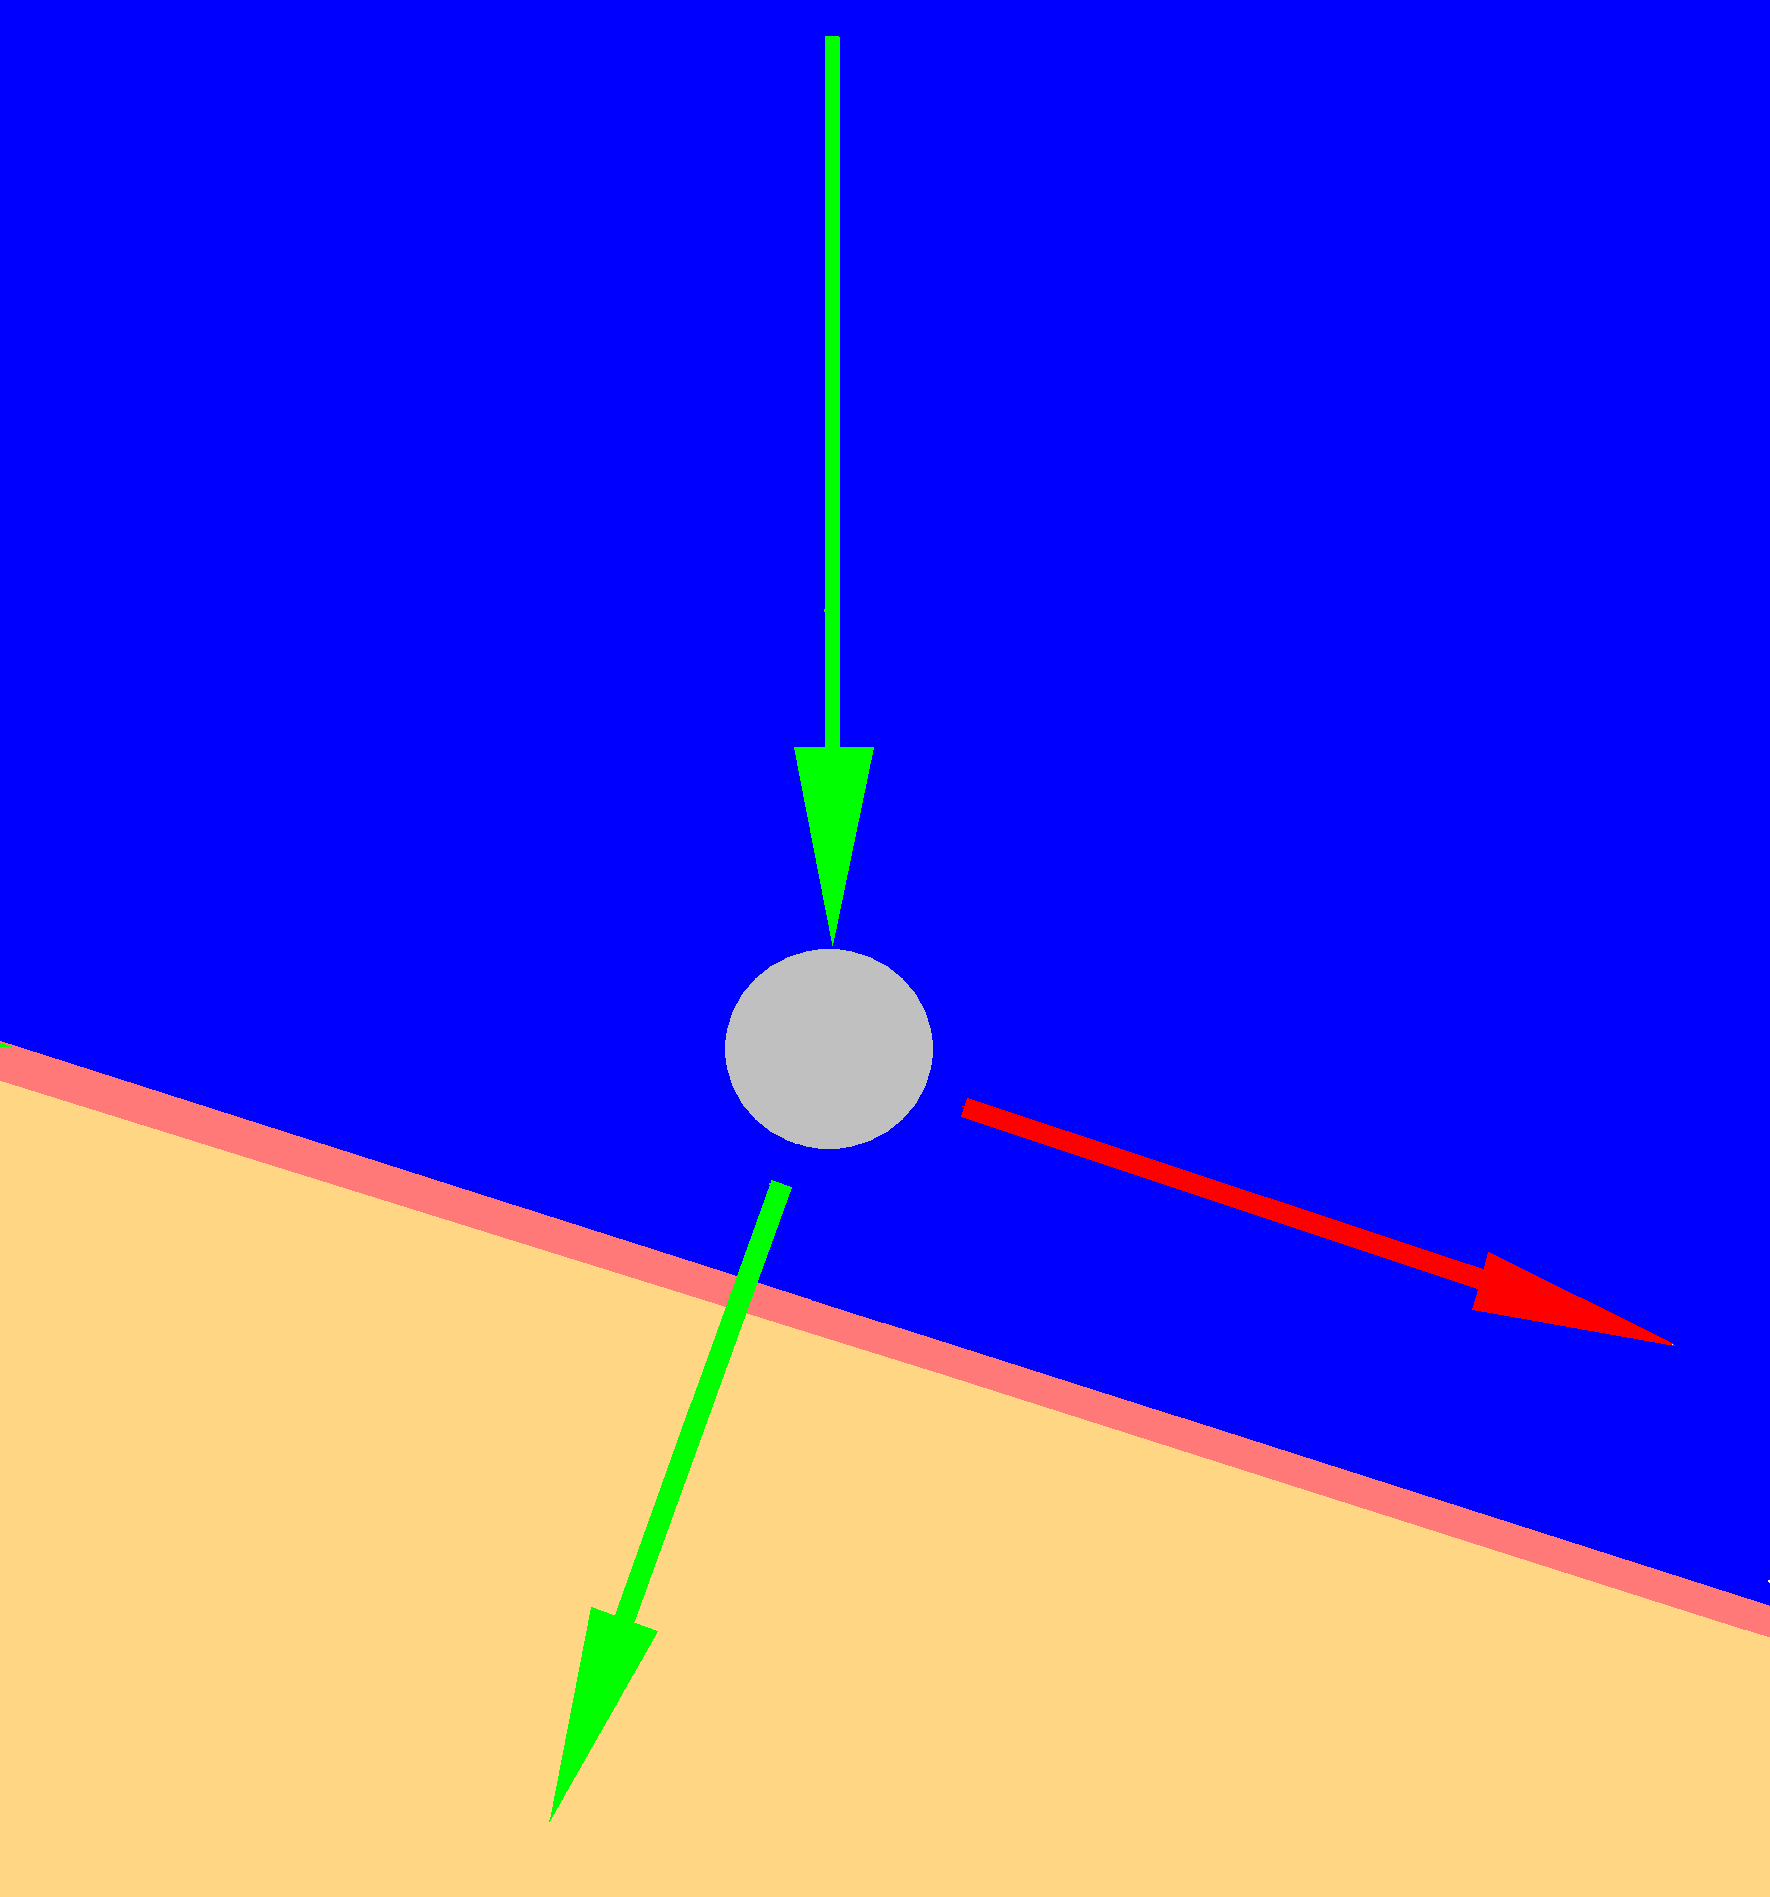 Рис. 3. Расположенная перпендикулярно к горизонтальной плоскости линия зеленого цвета, помеченная стрелкой, не направлена под прямым углом к рассматриваемой поверхности. Вектор сил направлен, с одной стороны, перпендикулярно к поверхности опоры (альвеолярному гребню), а с другой стороны — в боковой области — параллельно направленной вниз наклонной плоскости (линия со стрелкой красного цвета). В таком случае с пешеходом на ледяной дорожке или в аналогичной ситуации с полным съемным протезом происходит соскальзывание в сторону (линия со стрелкой красного цвета).